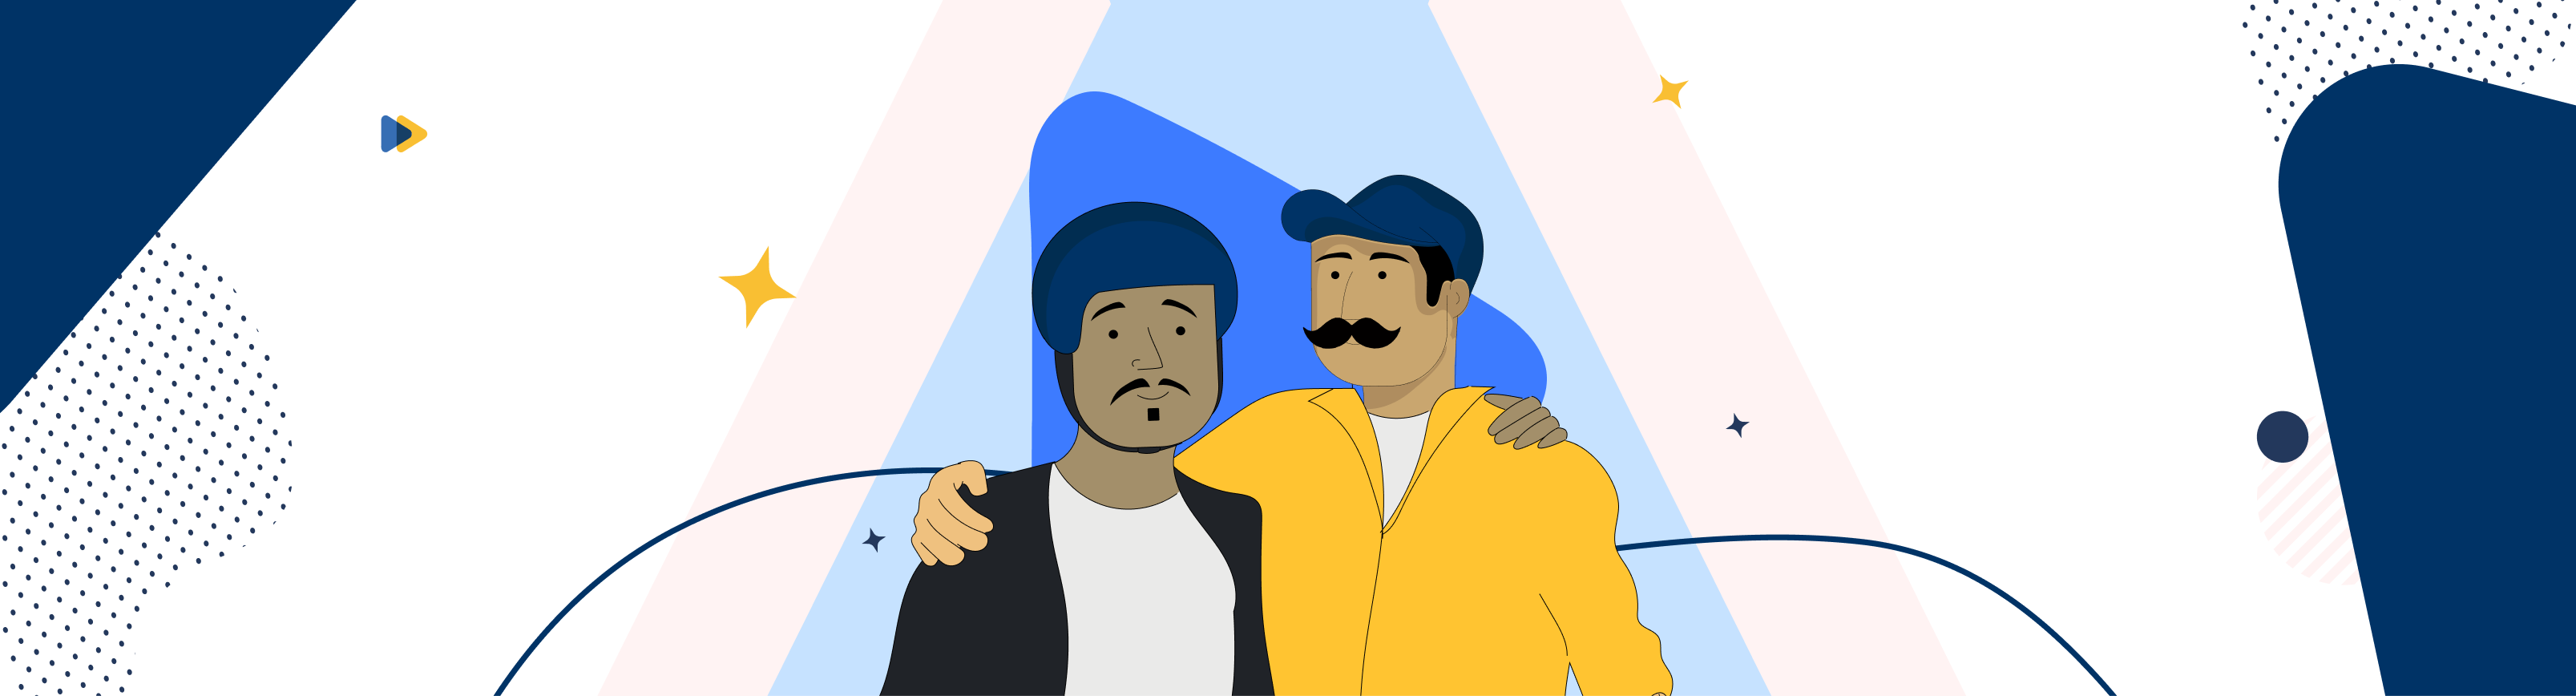 Hombres repartidores abrazándose con bigotes y gorras azules